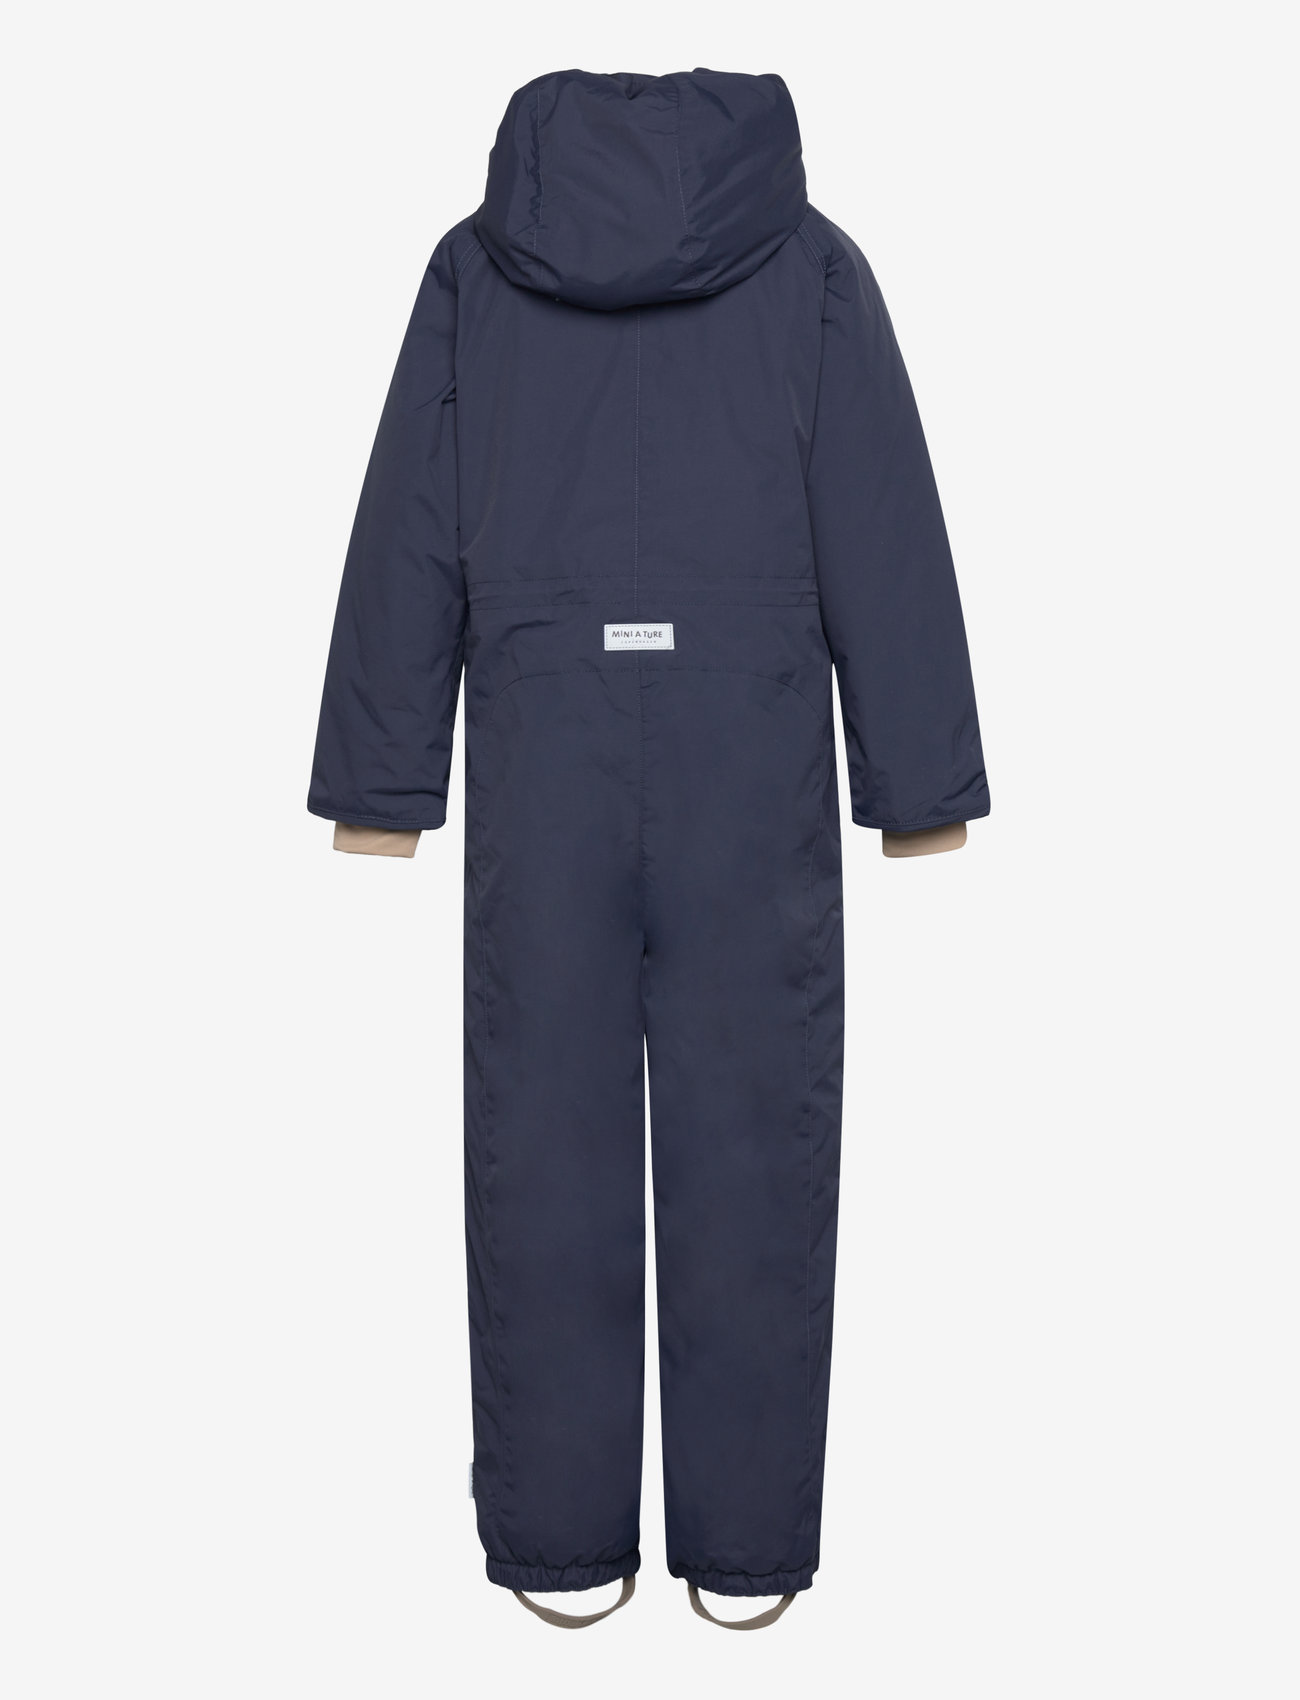 Mini A Ture - Wanni fleece lined snowsuit. GRS - børn - blue nights - 1